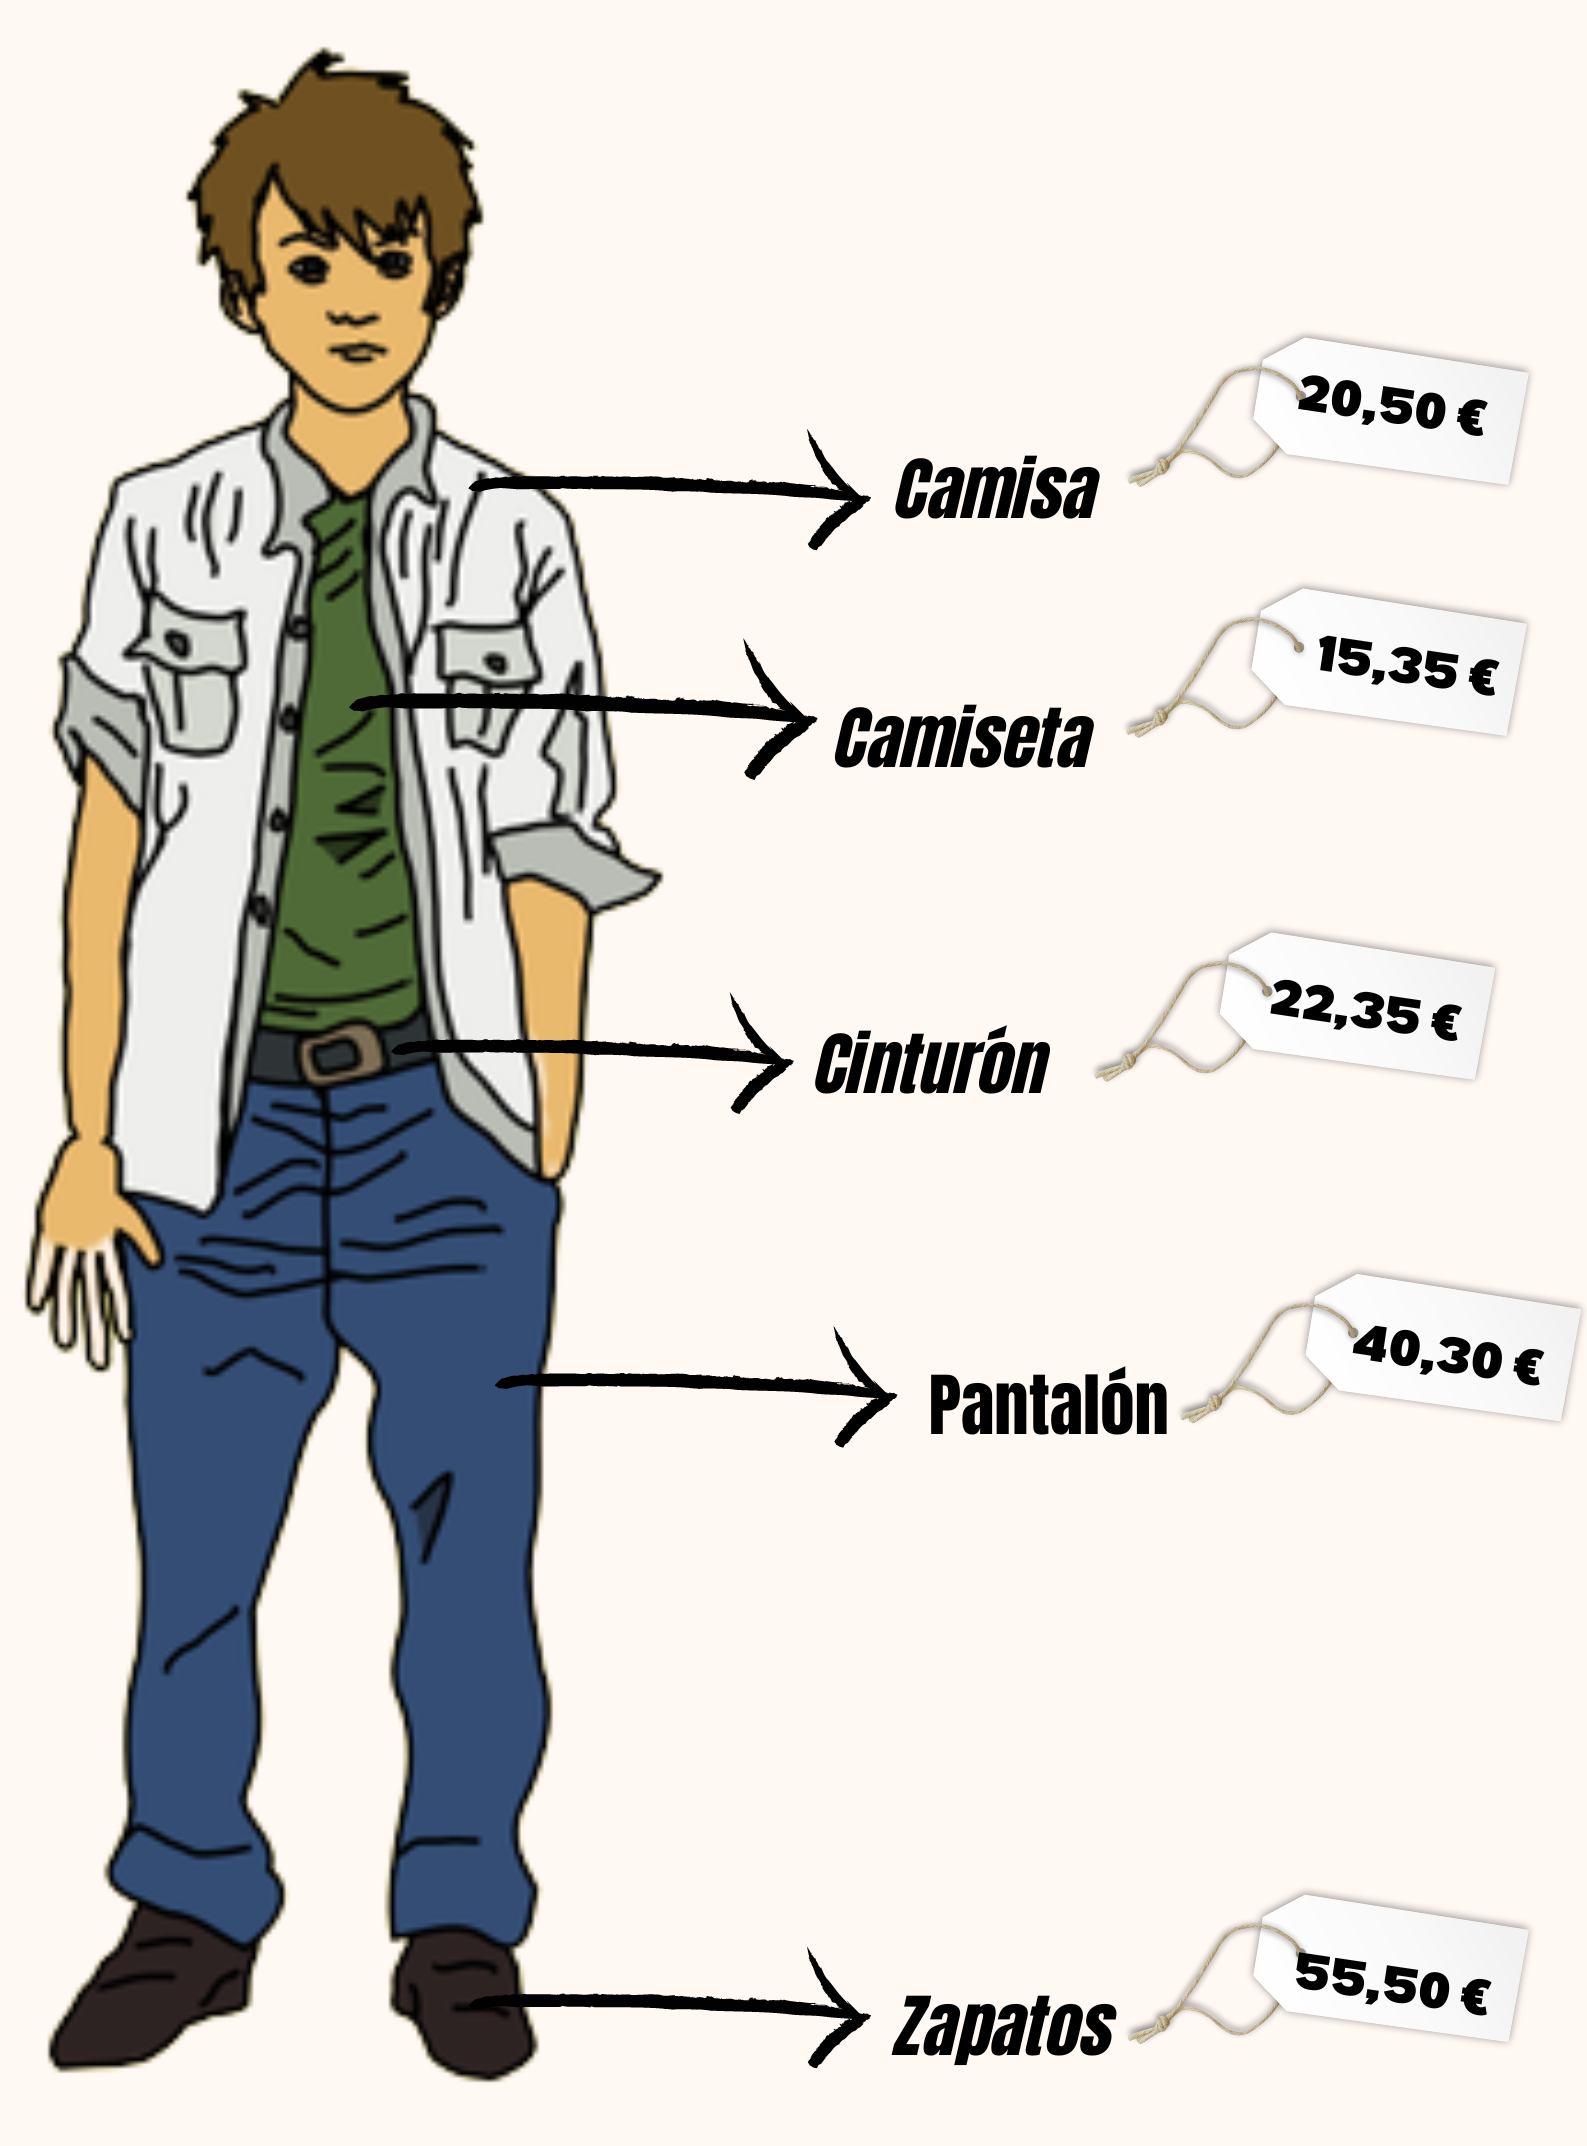 Imagen que muestra un chico vestido con prendas en las que se indican sus precios.